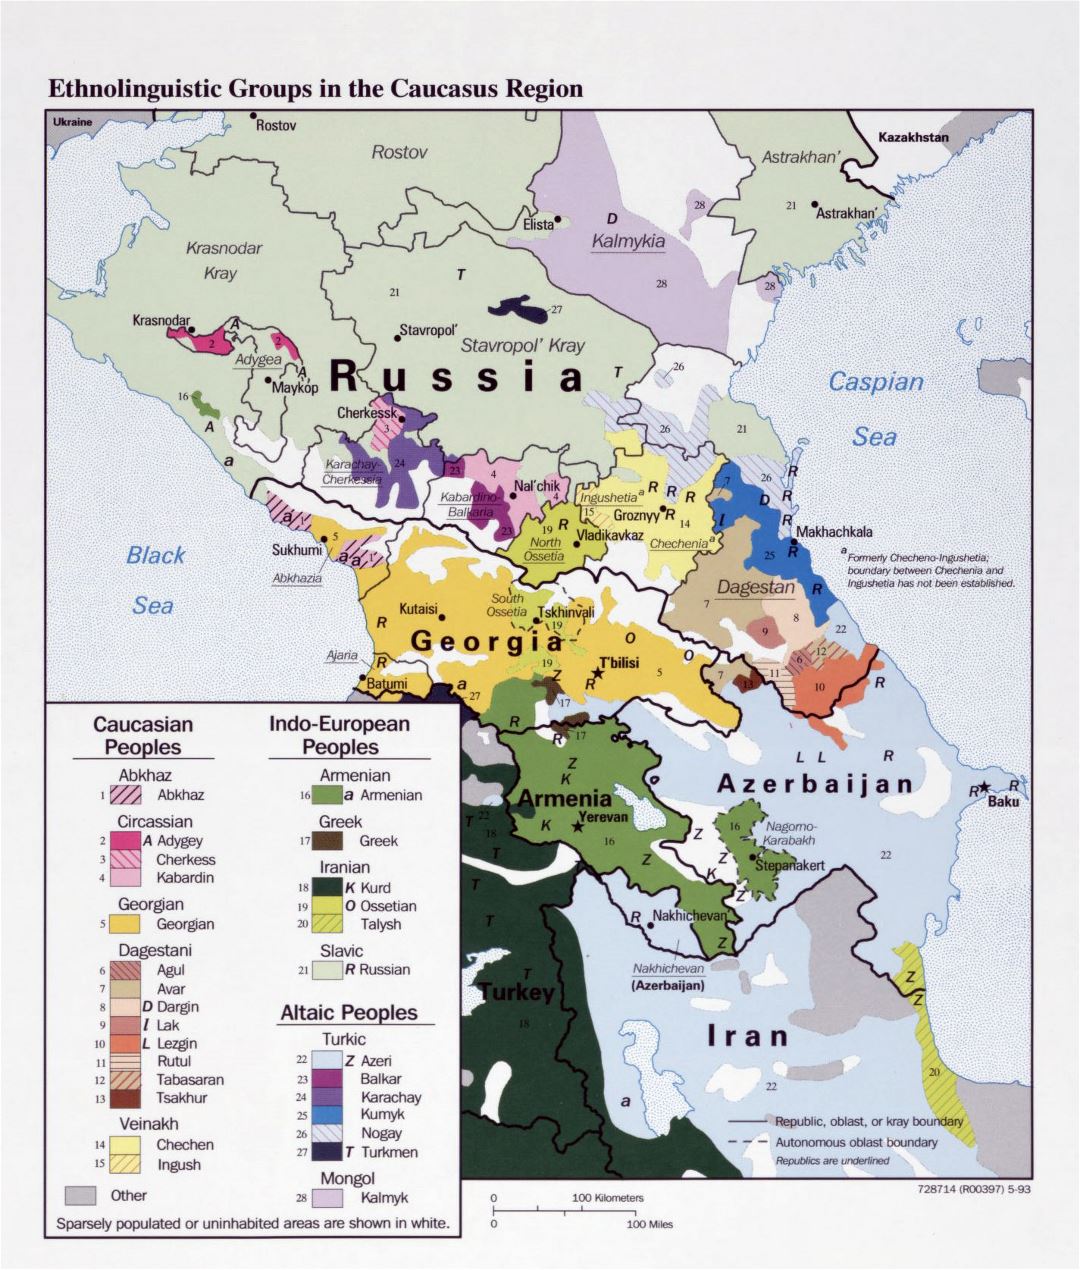 Gran mapa detallado de etnolingüísticas grupos de la región del Cáucaso - 1993